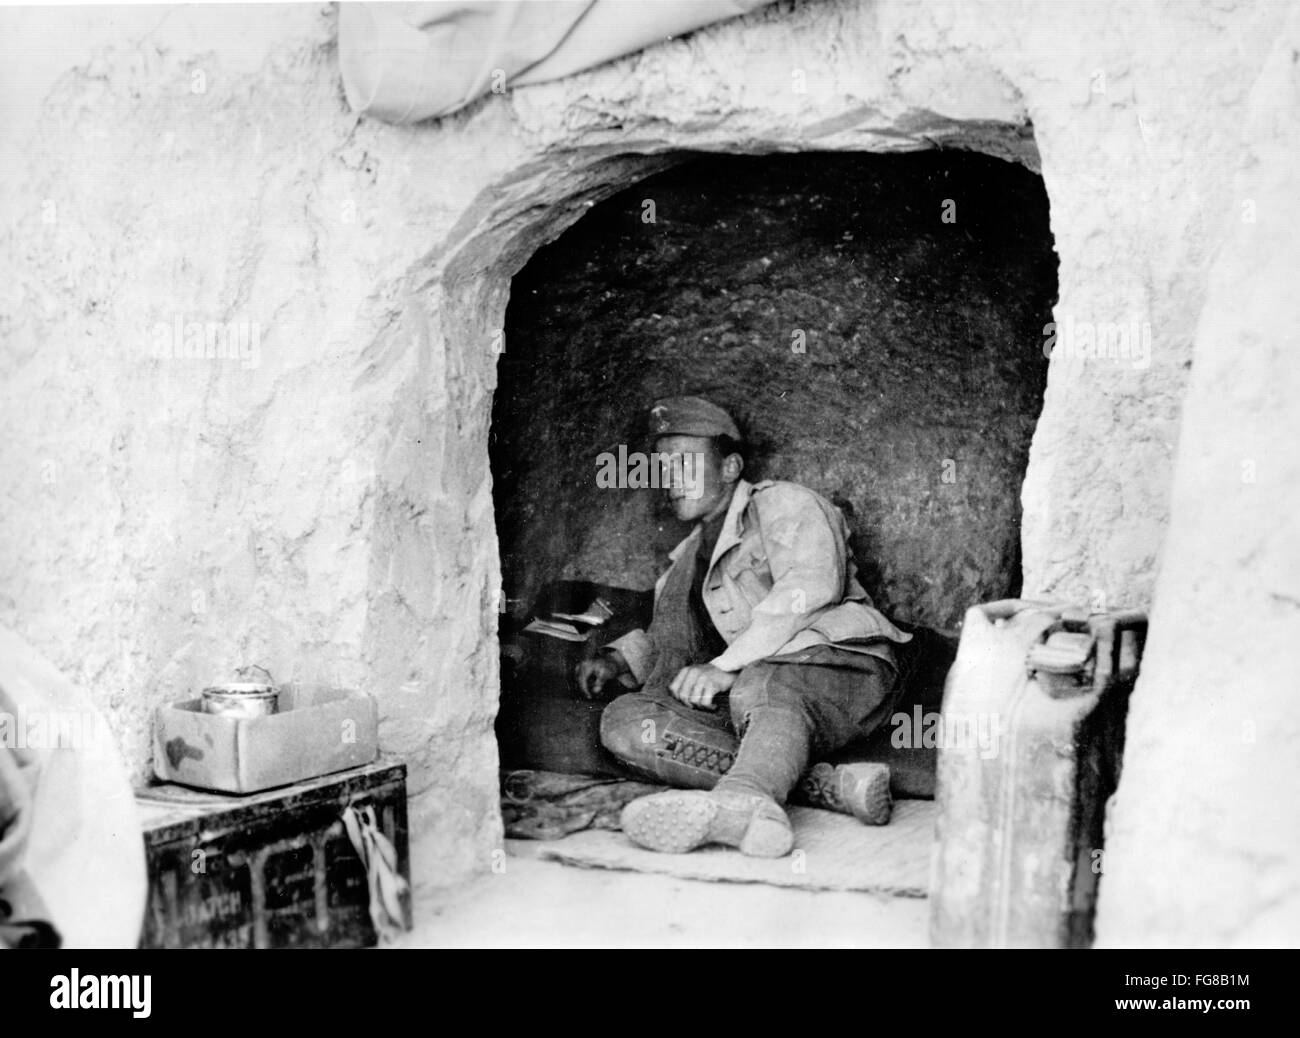 L'image de la propagande nazie! Dépeint un soldat de la Wehrmacht allemande dans une grotte en montagne en Tunisie, publiée le 23 février 1943. Lieu inconnu. Fotoarchiv für Zeitgeschichte Banque D'Images